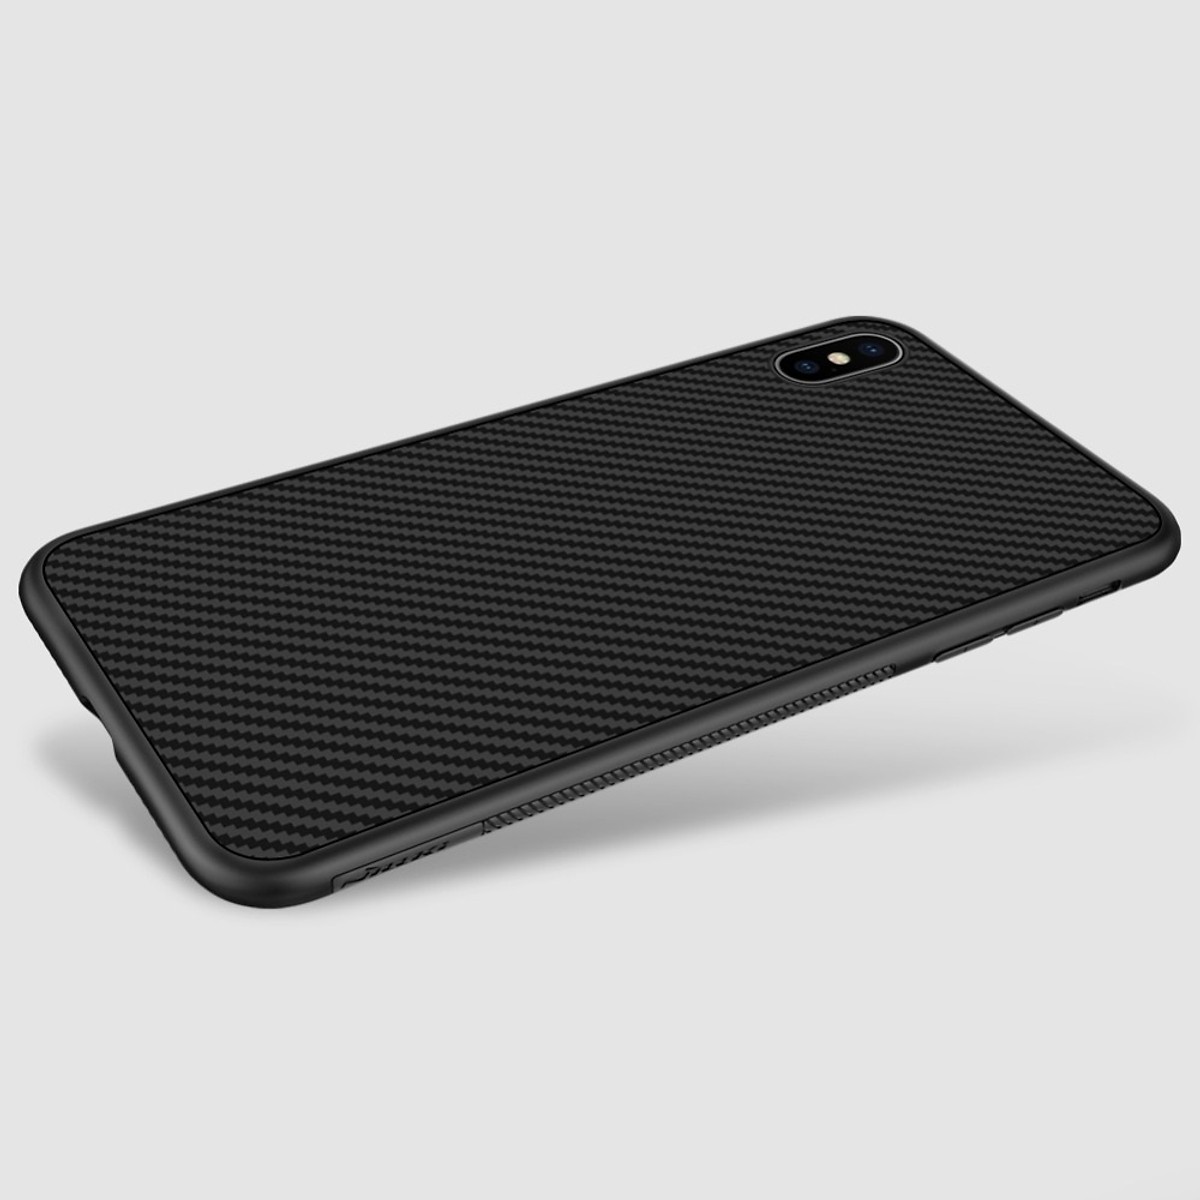 Ốp lưng chống sốc sợi Carbon cho iPhone X - Xs - Xs Max hiệu Nillkin